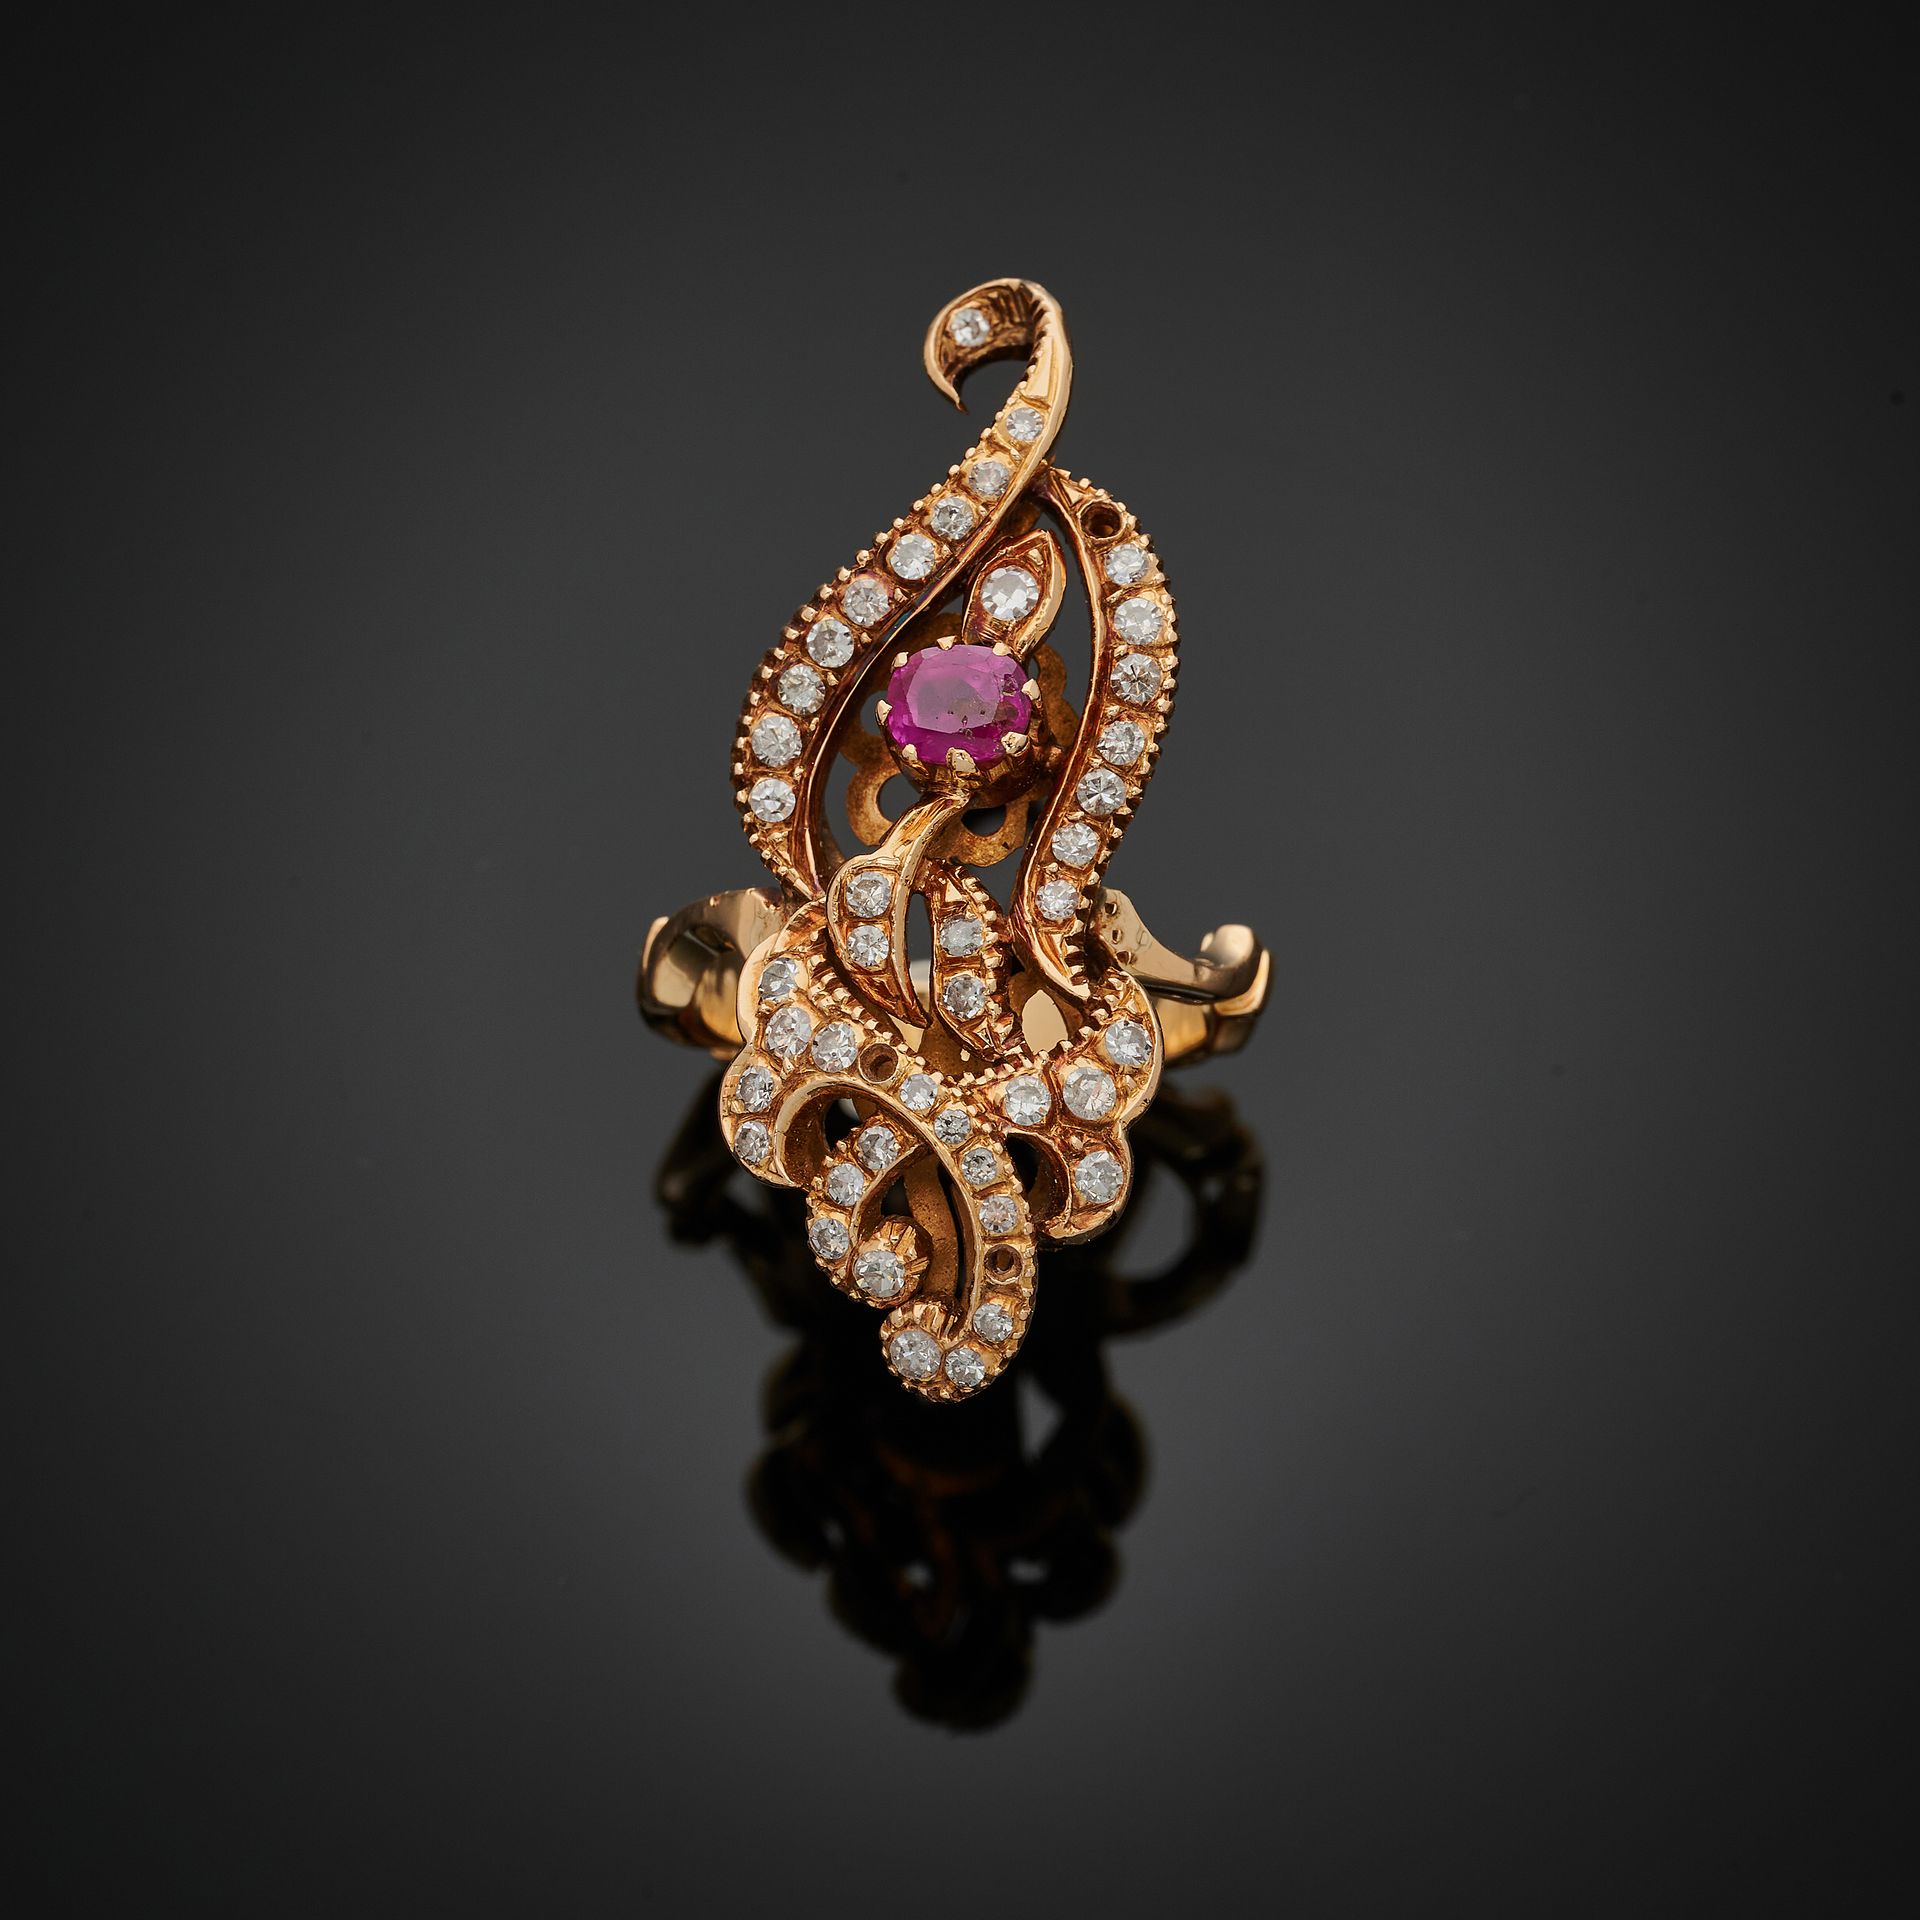 Null 一枚750毫米的印度黄金戒指，卷轴形的盘子上镶嵌着八分之一的钻石（缺失）和一颗椭圆形的红宝石。
TDD: 55 (存在一个弹簧环)
毛重：11.6克